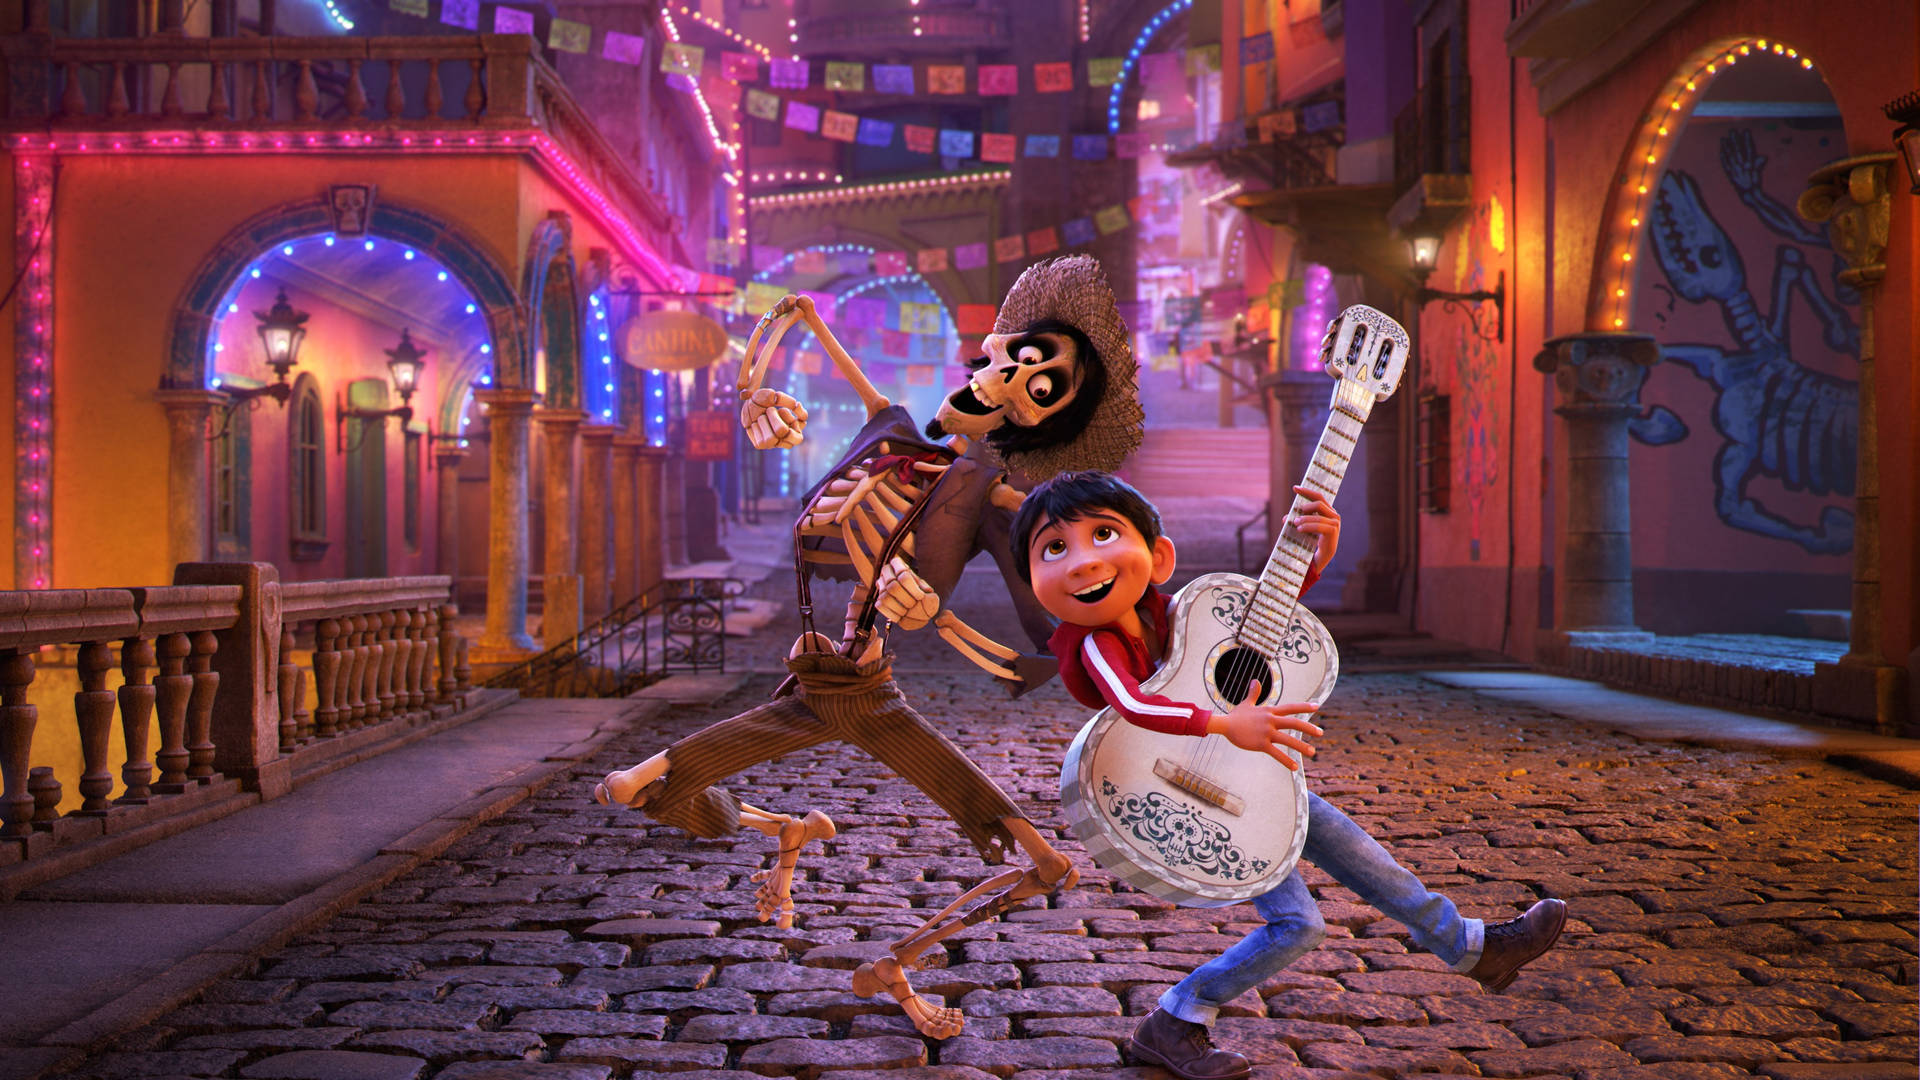 2560x1440 Disney Miguel og Hector ordentlig detaljeret baggrundsbillede Wallpaper